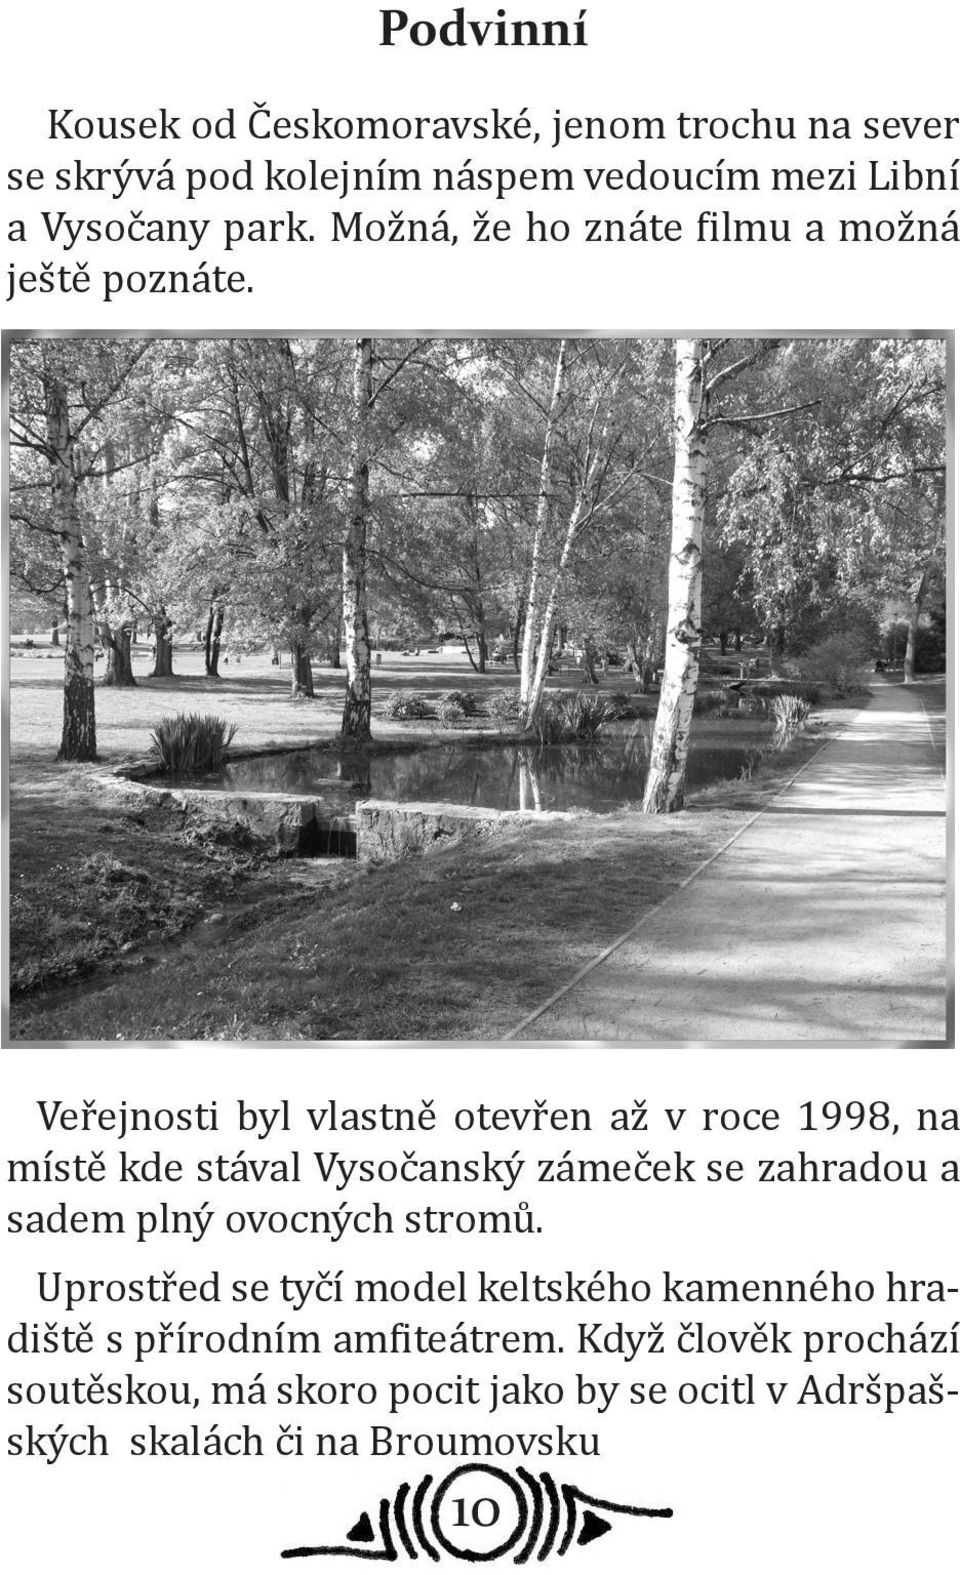 Veřejnosti byl vlastně otevřen až v roce 1998, na místě kde stával Vysočanský zámeček se zahradou a sadem plný ovocných